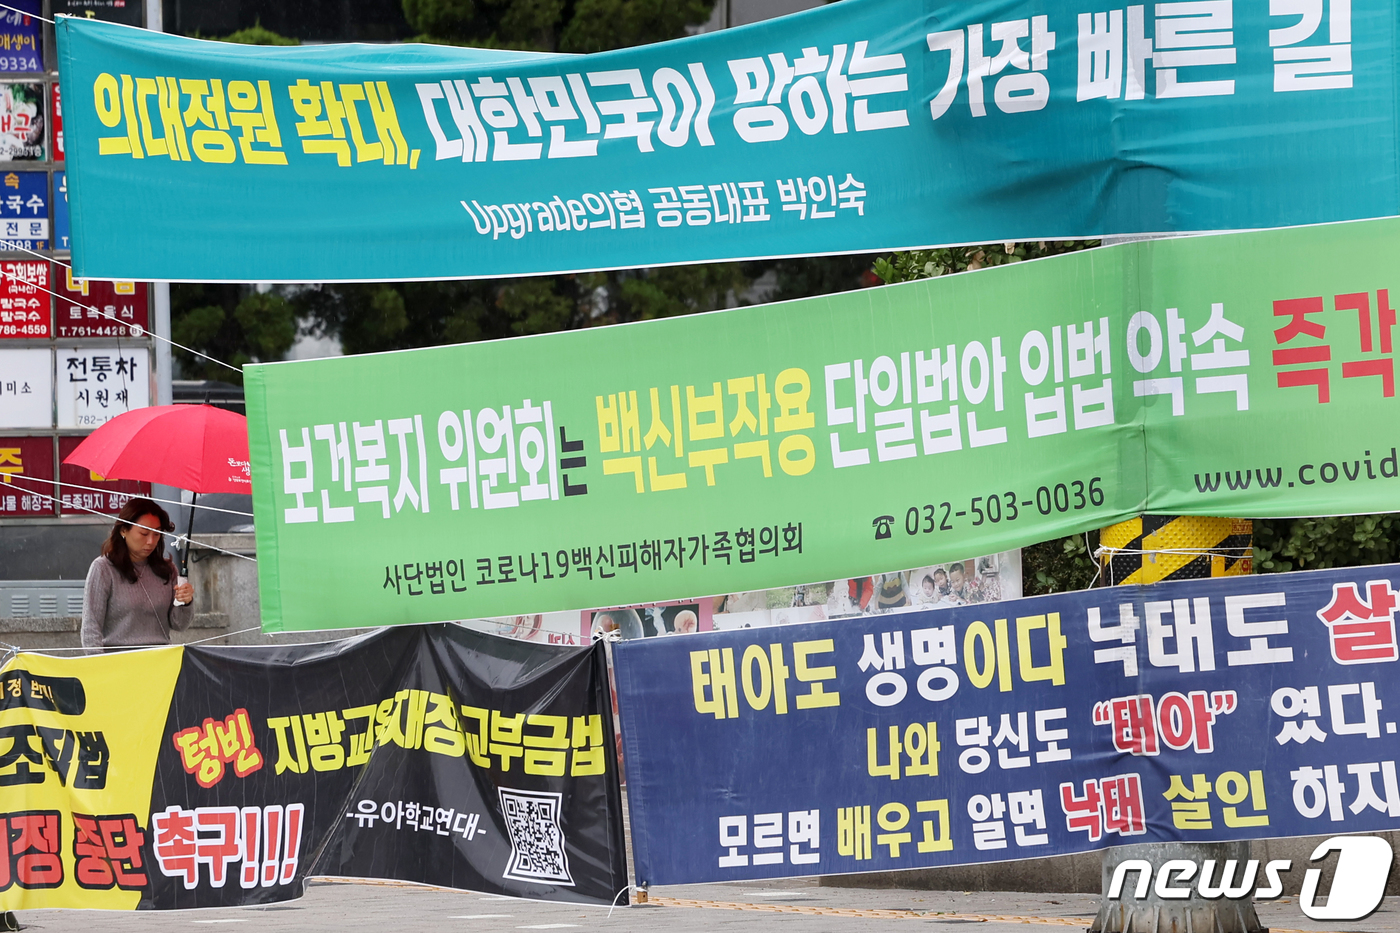 (서울=뉴스1) 민경석 기자 = 정당 현수막 '난립'을 막기 위해 서울시가 조례로 현수막 개수와 내용을 제한하고 나섰다.개정된 조례안에 따르면 한 정당이 동시에 걸 수 있는 현수막 …